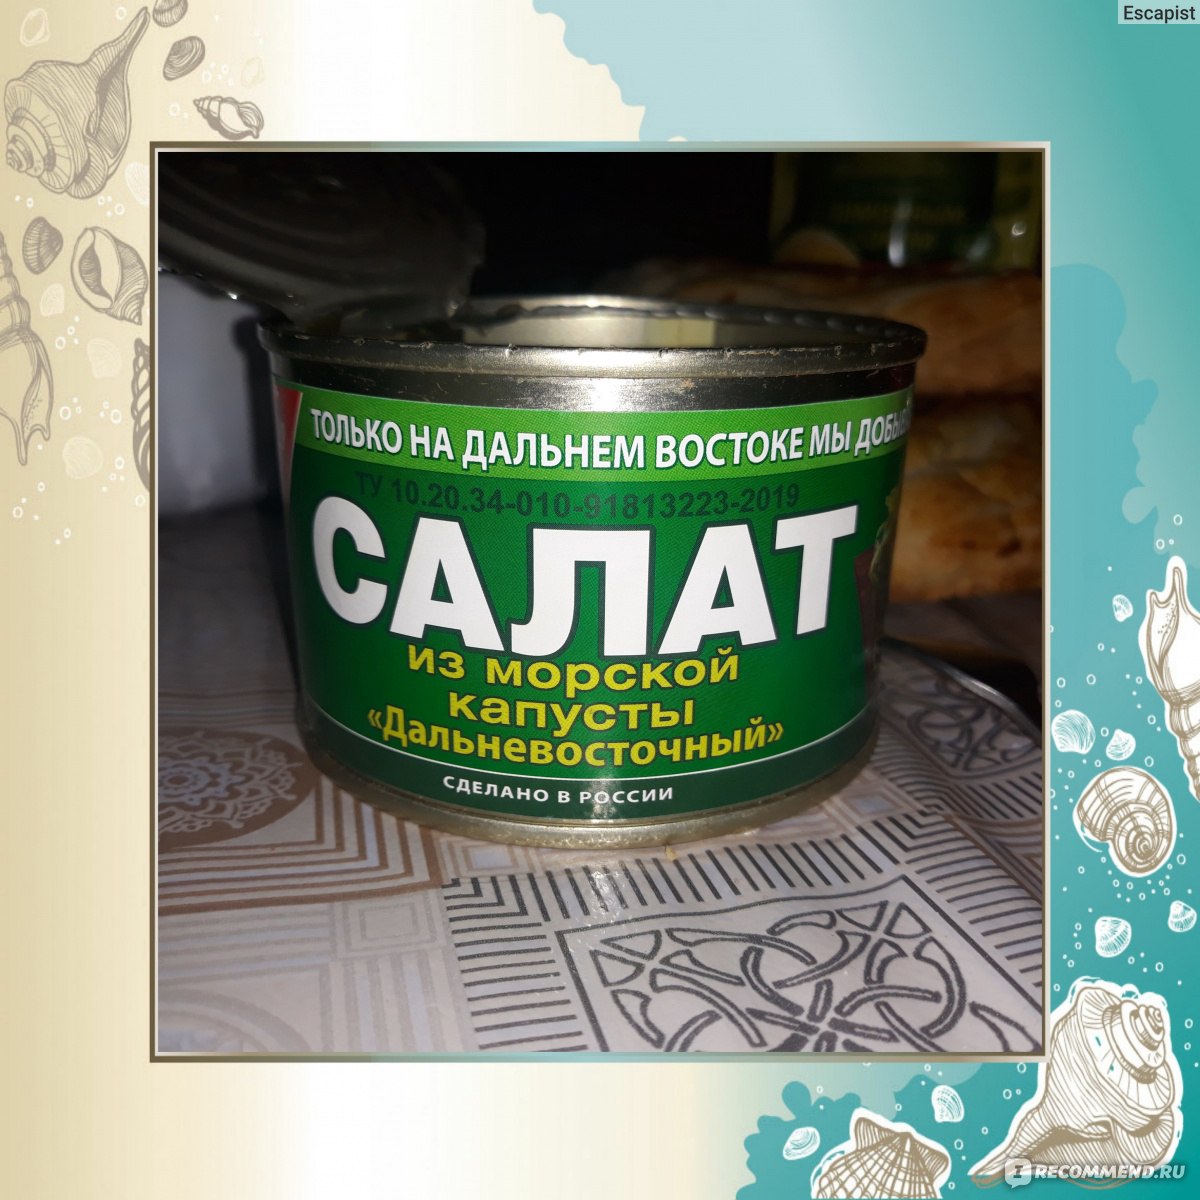 Салат из морской капусты «Дальневосточный», 220 г